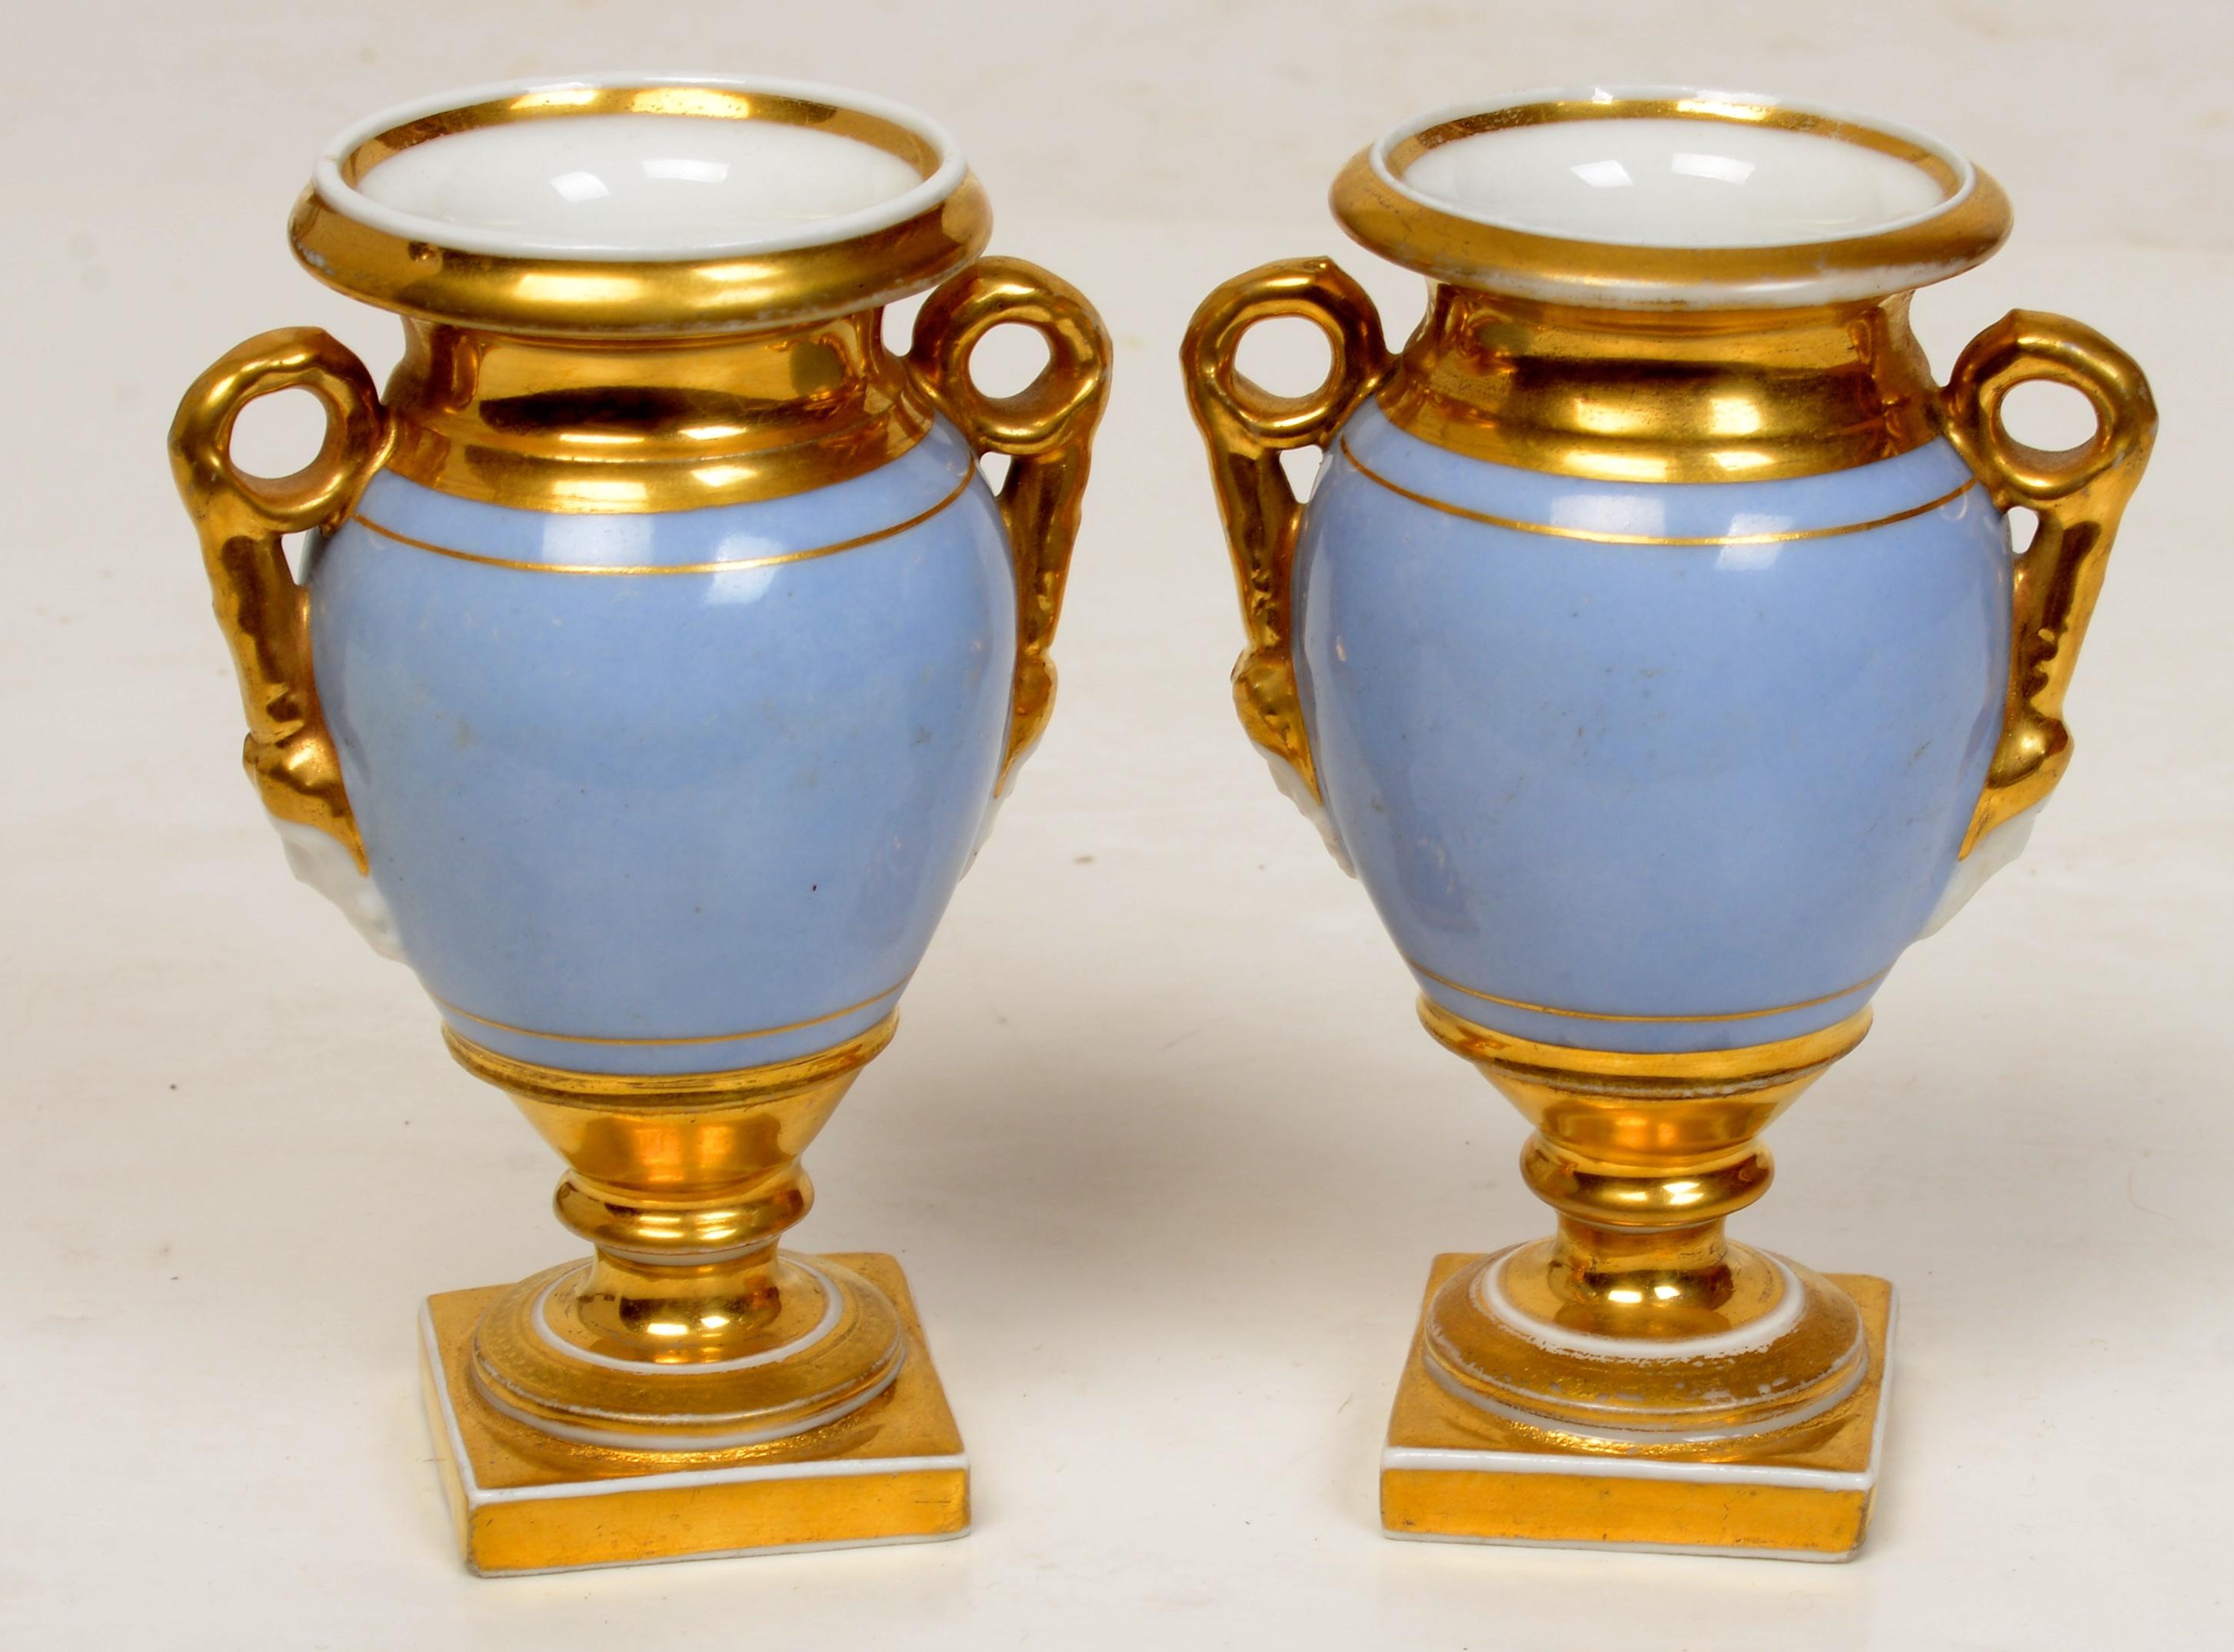 Paire d'urnes à pied décorées de scènes de jardin, vers 1800. Les urnes miniatures de ce type sont rares et la décoration est exceptionnelle. Les urnes ont une construction boulonnée avec des poignées à volutes et des terminaux de masque moulés. Les